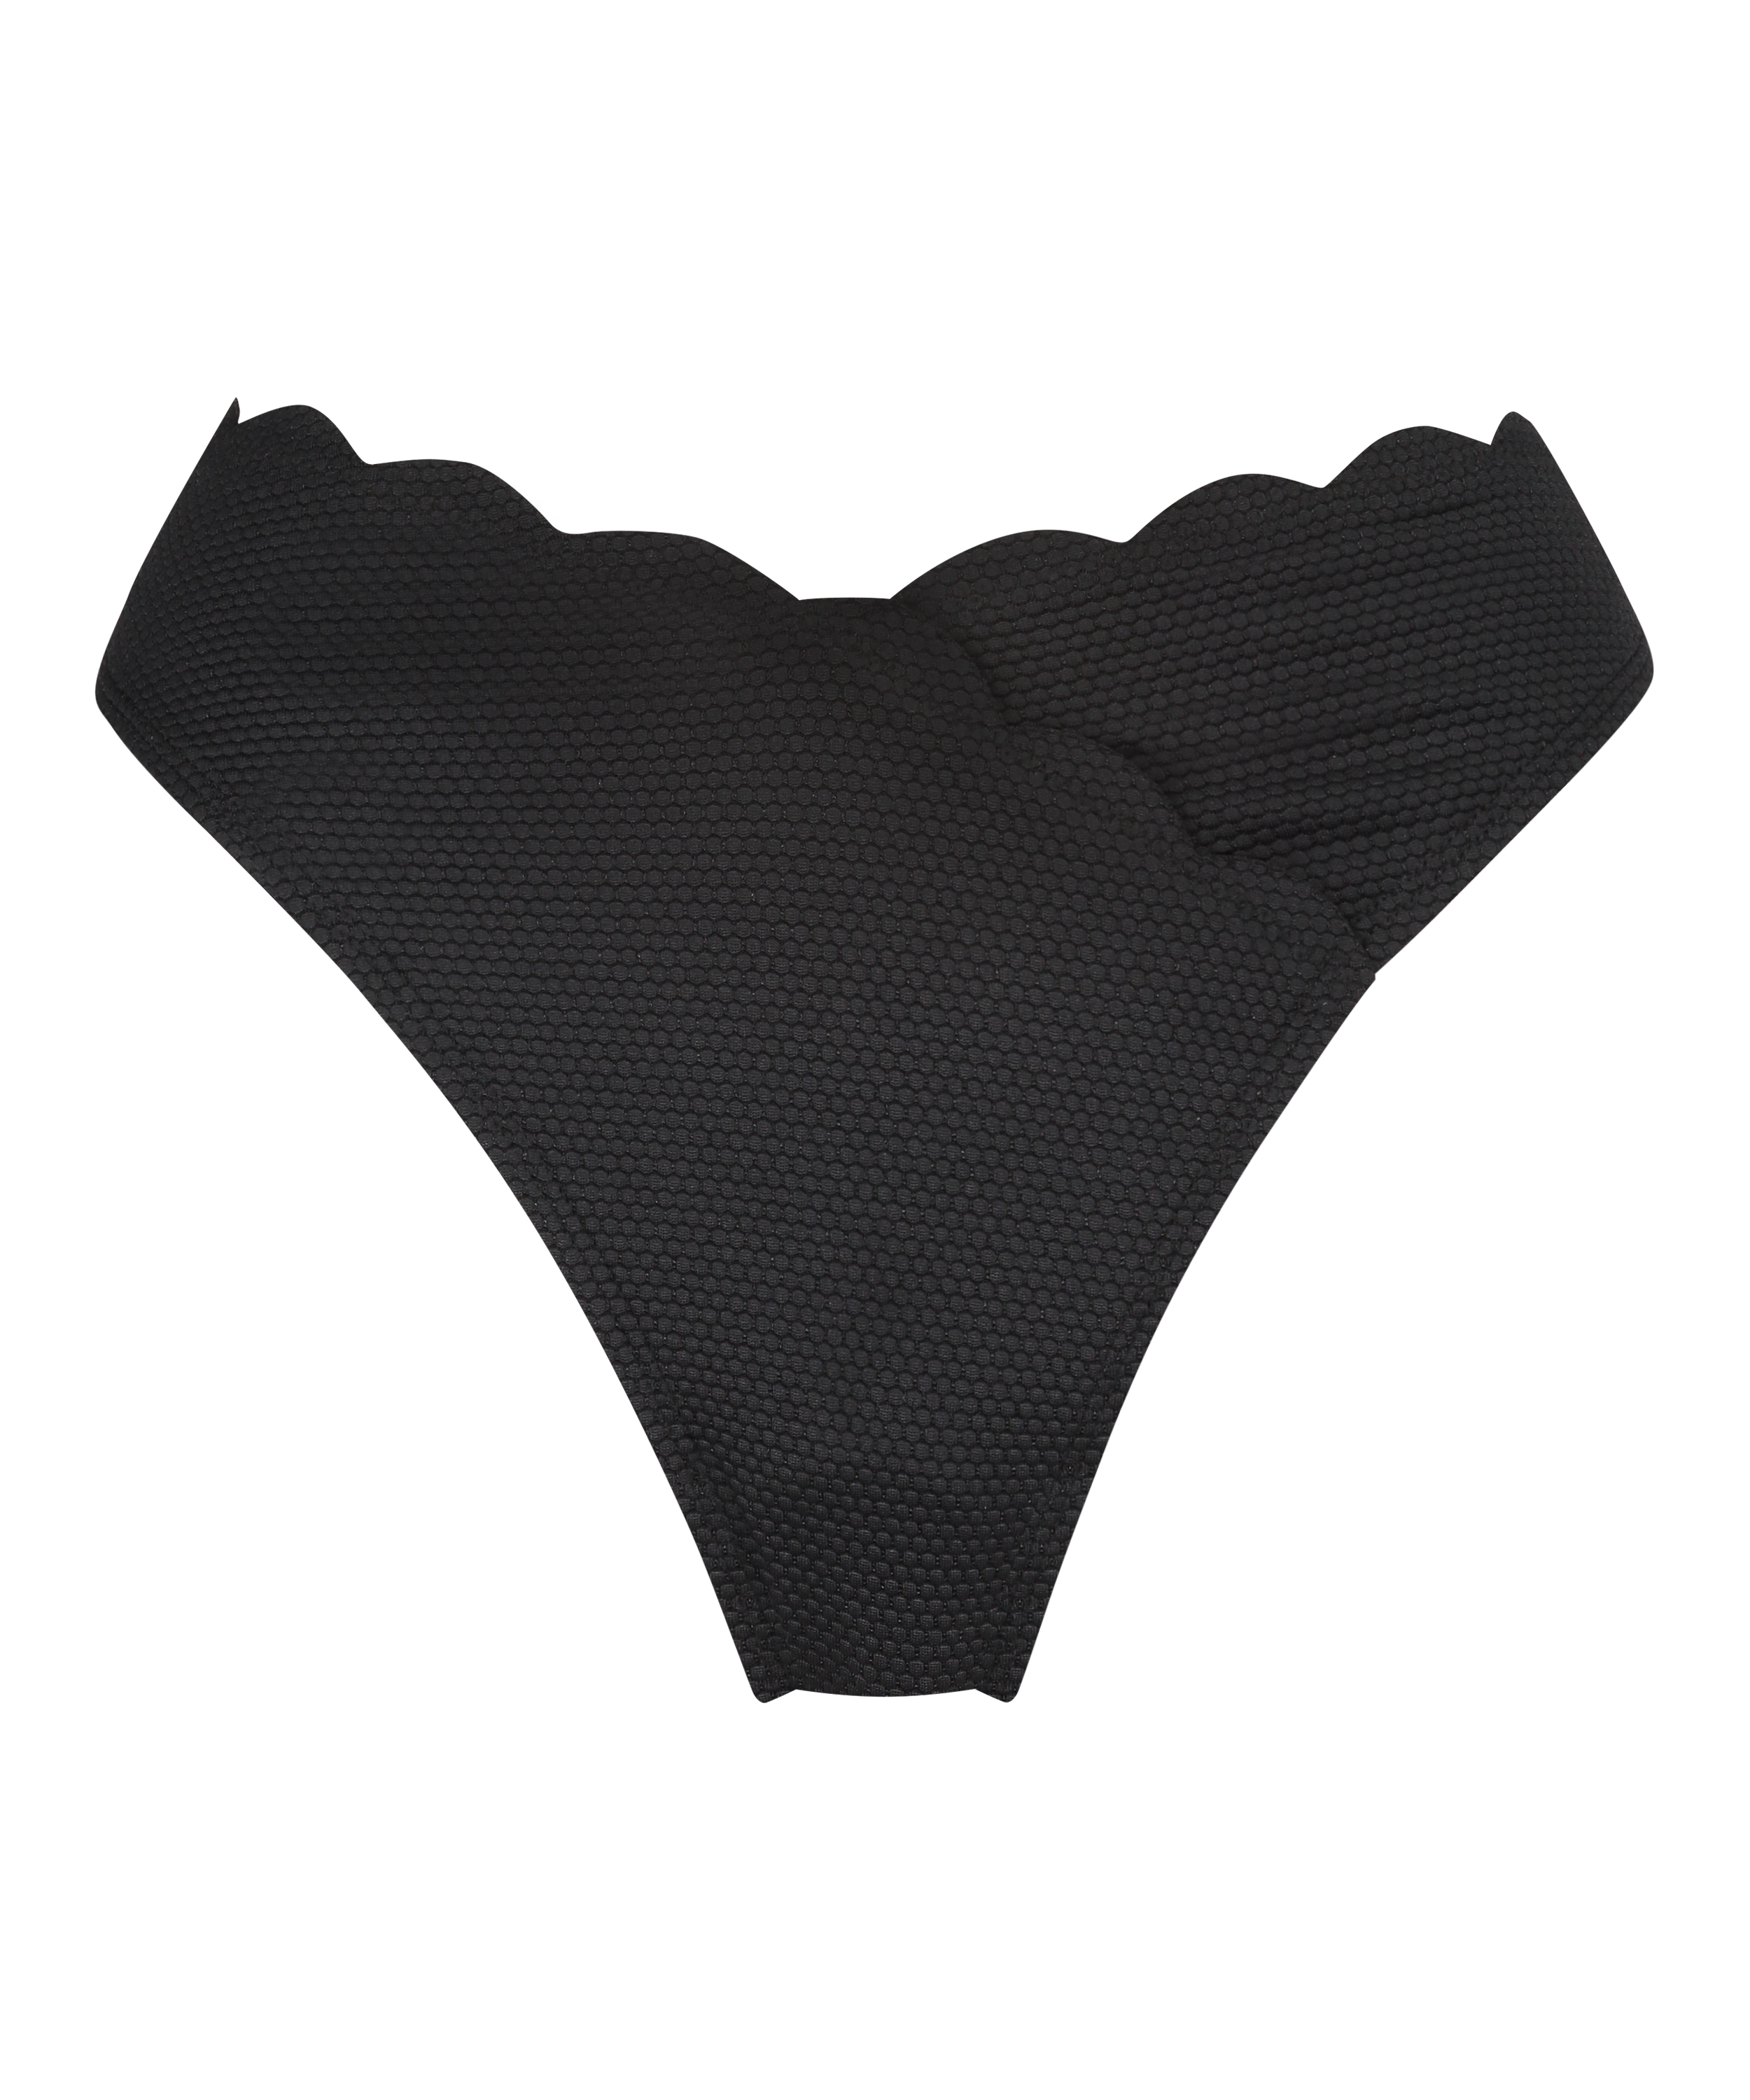 Scallop high-leg bikini bottoms, Black, main